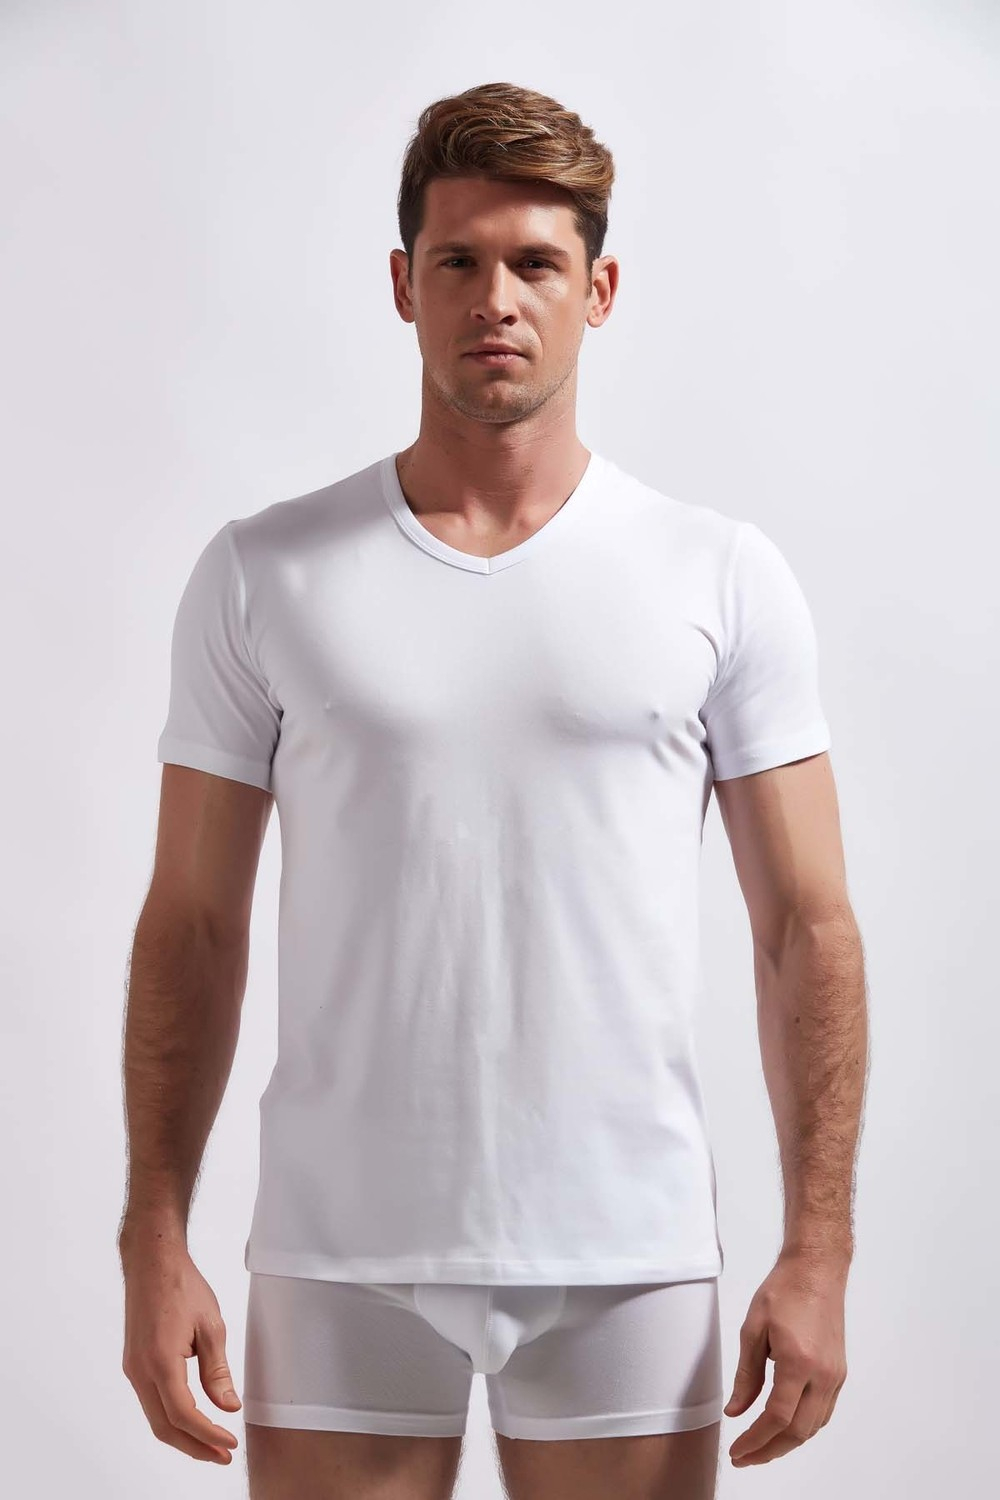 Мужская футболка с V-образным вырезом и короткими рукавами, 2 шт., из хлопка и лайкры, модель 1303.